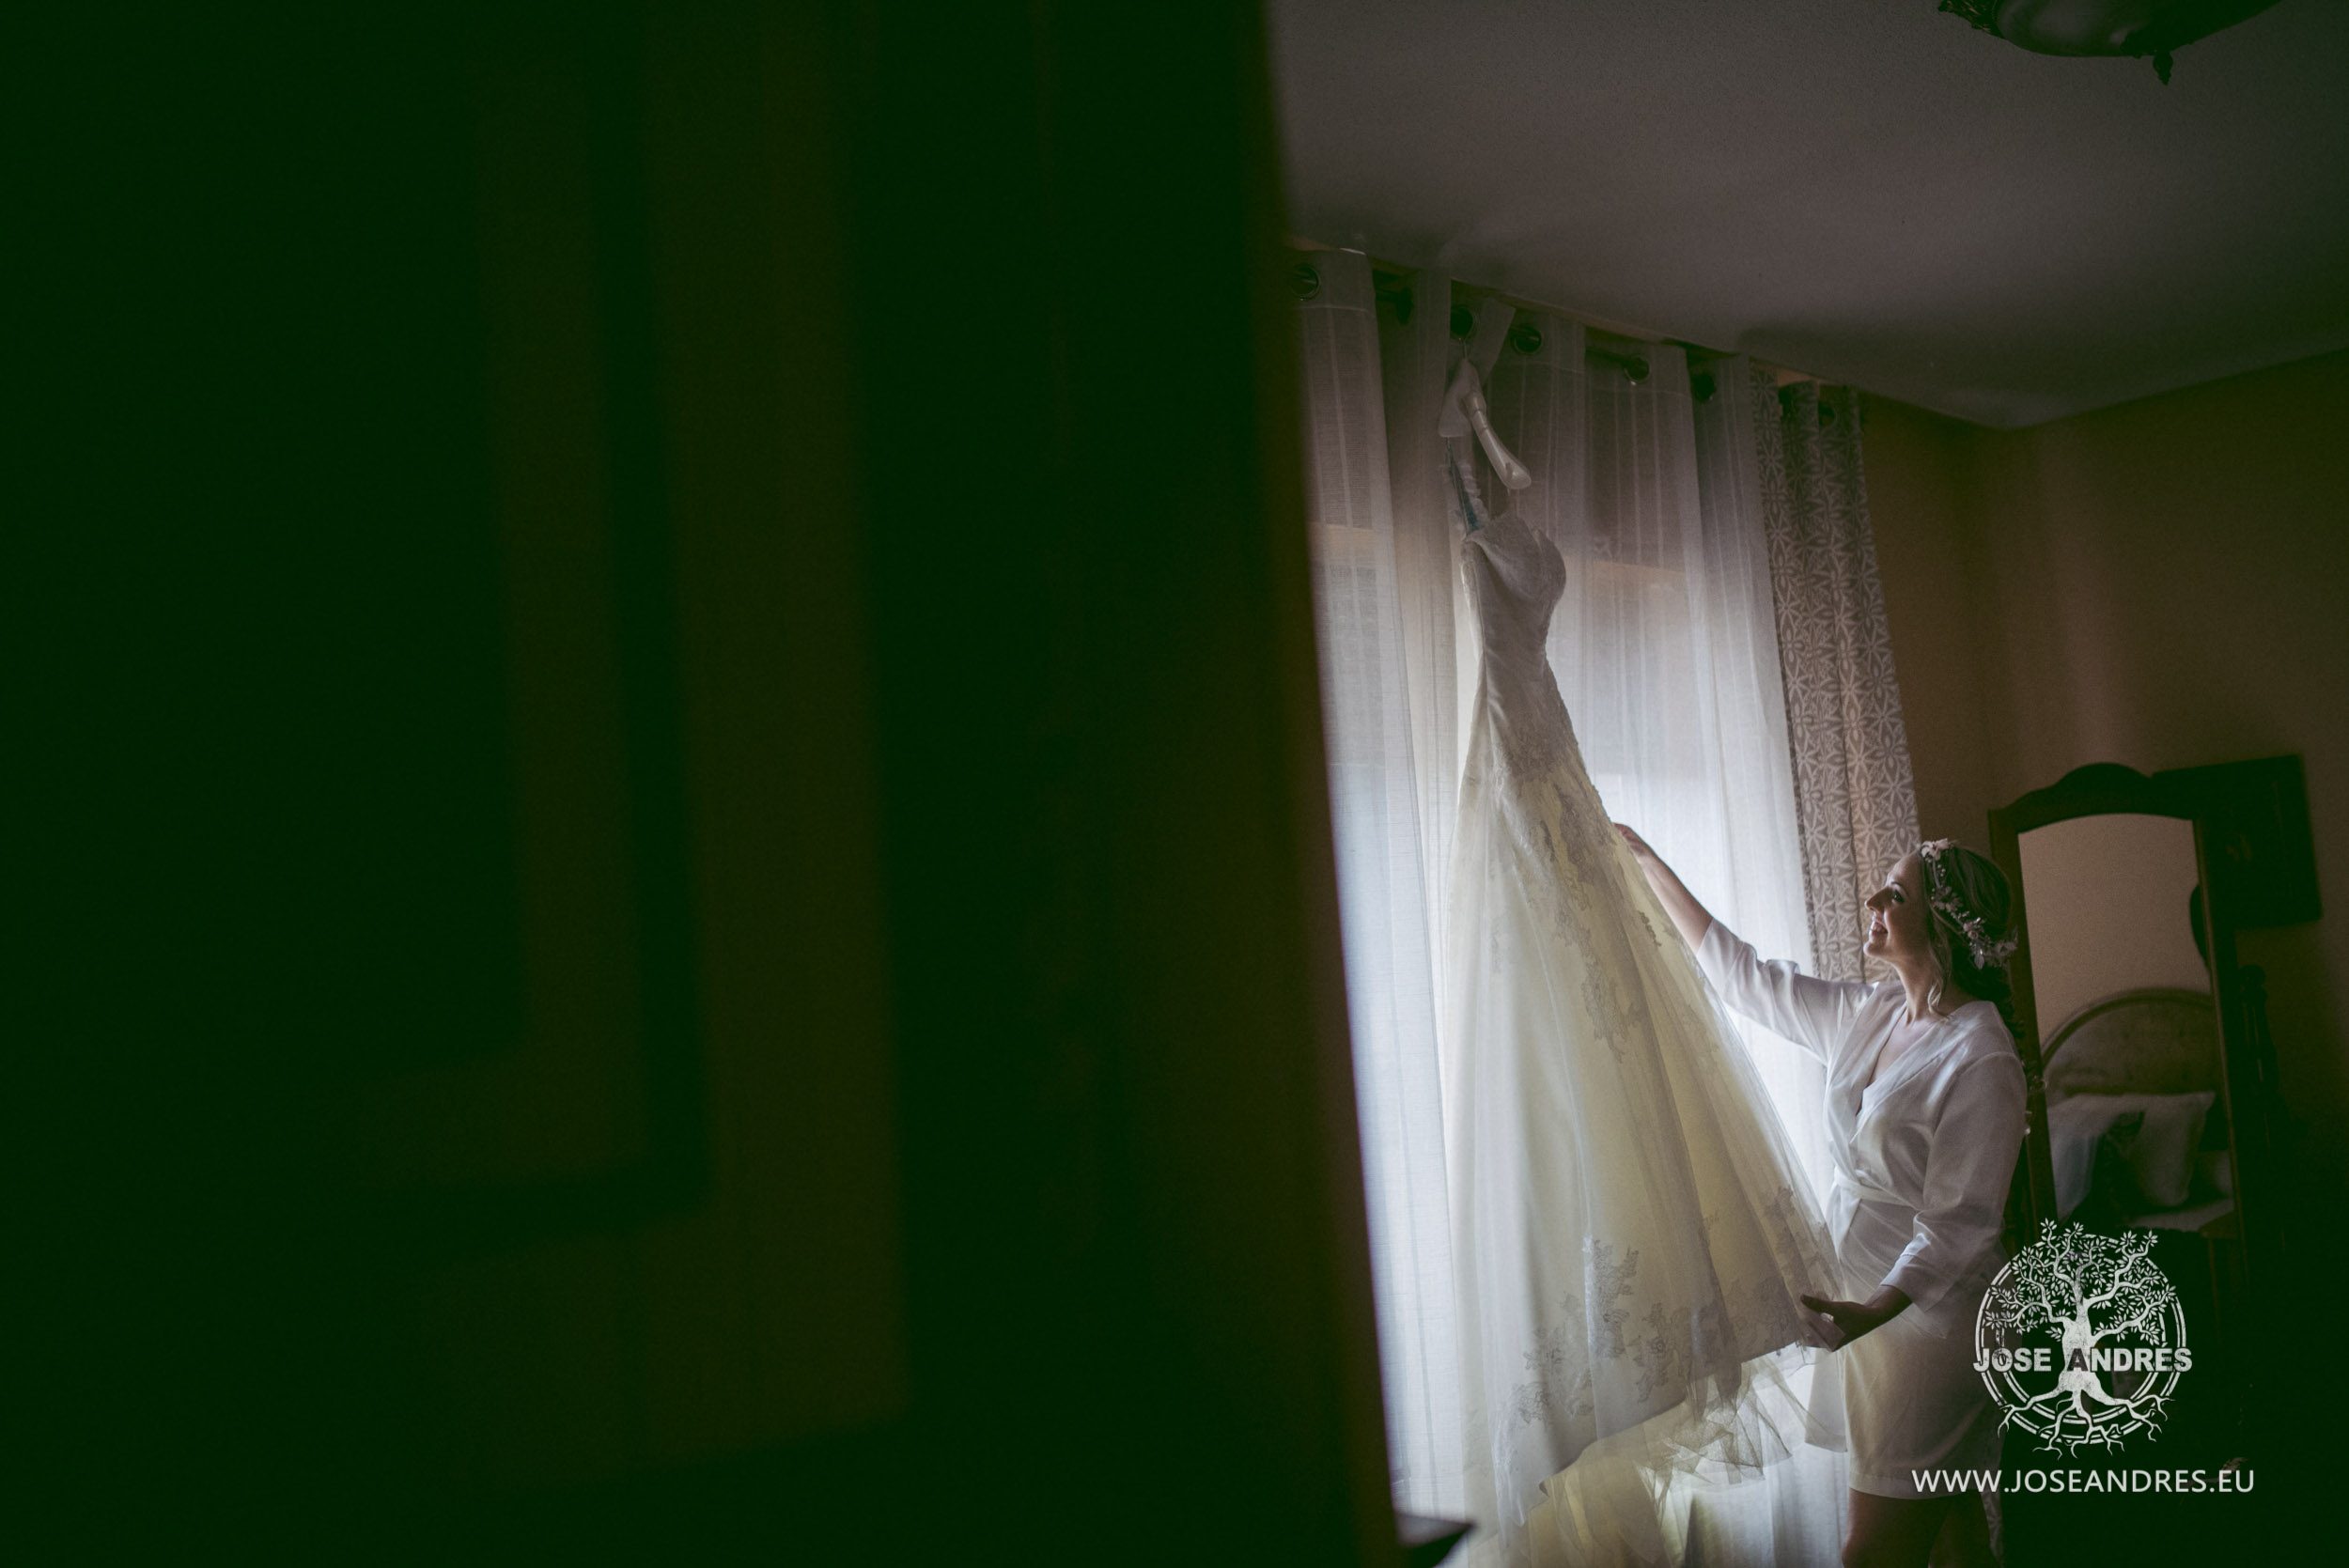 Boda en el hotel Beatriz de Albacete, Jose Andrés fotografía y cine documental de boda en Valencia, Albacete y Cuenca. Fotografía de boda natural y divertida, fotografía de boda sin posados